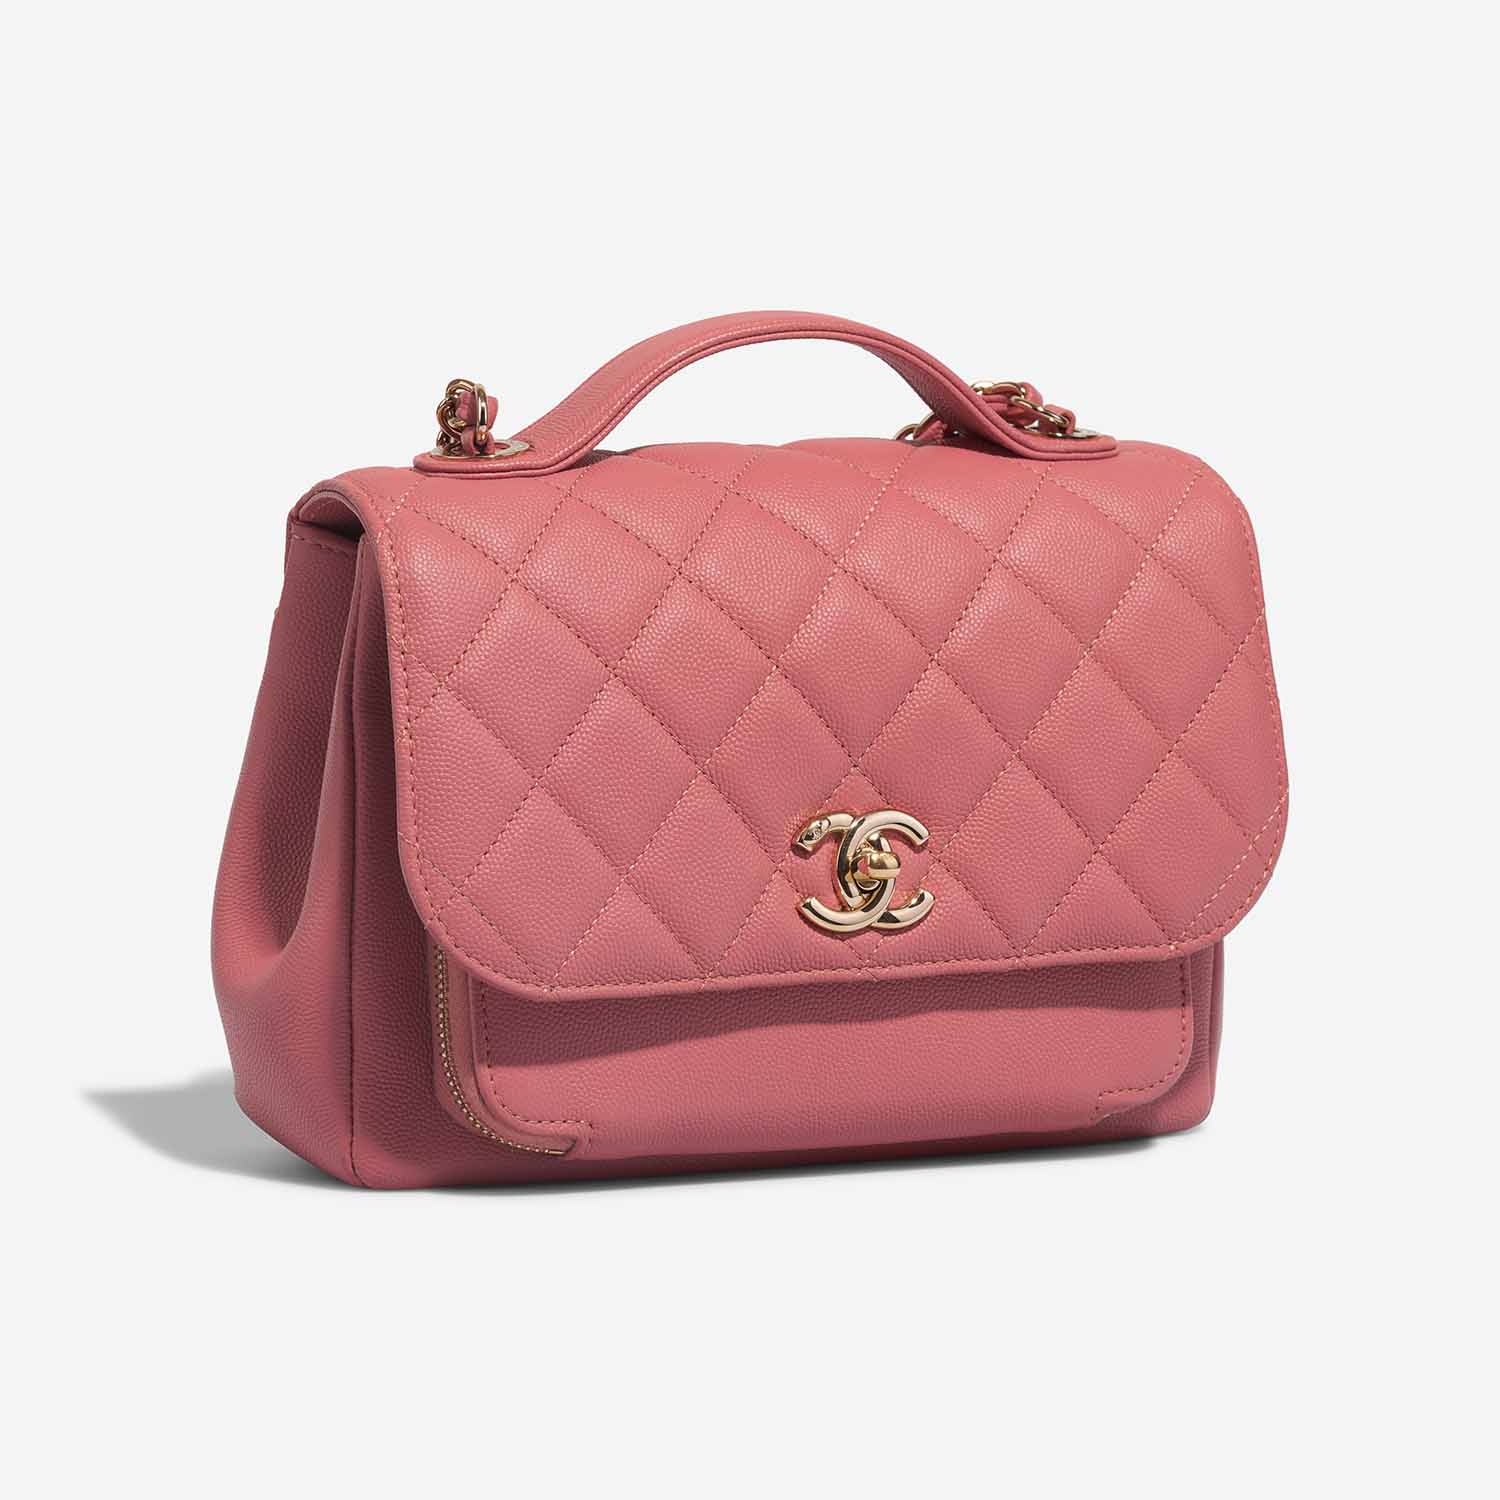 Chanel Business Affinity Medium Coral Pink Side Front | Verkaufen Sie Ihre Designer-Tasche auf Saclab.com